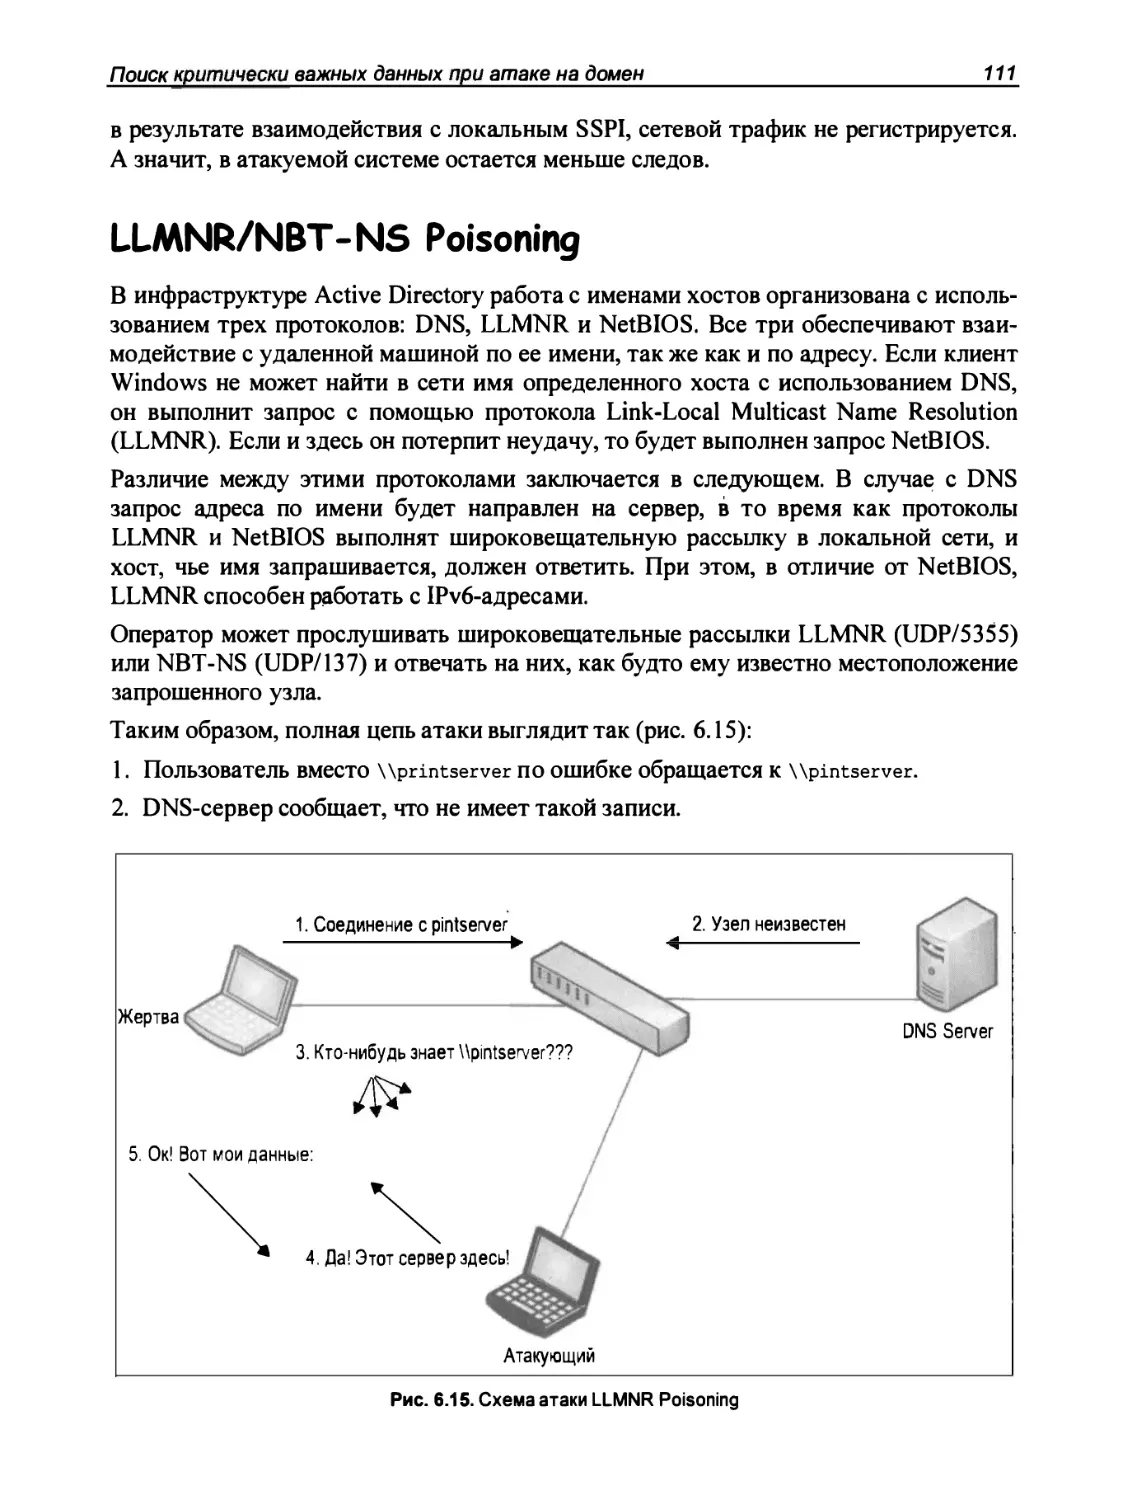 LLMNR/NBT-NS Poisoning